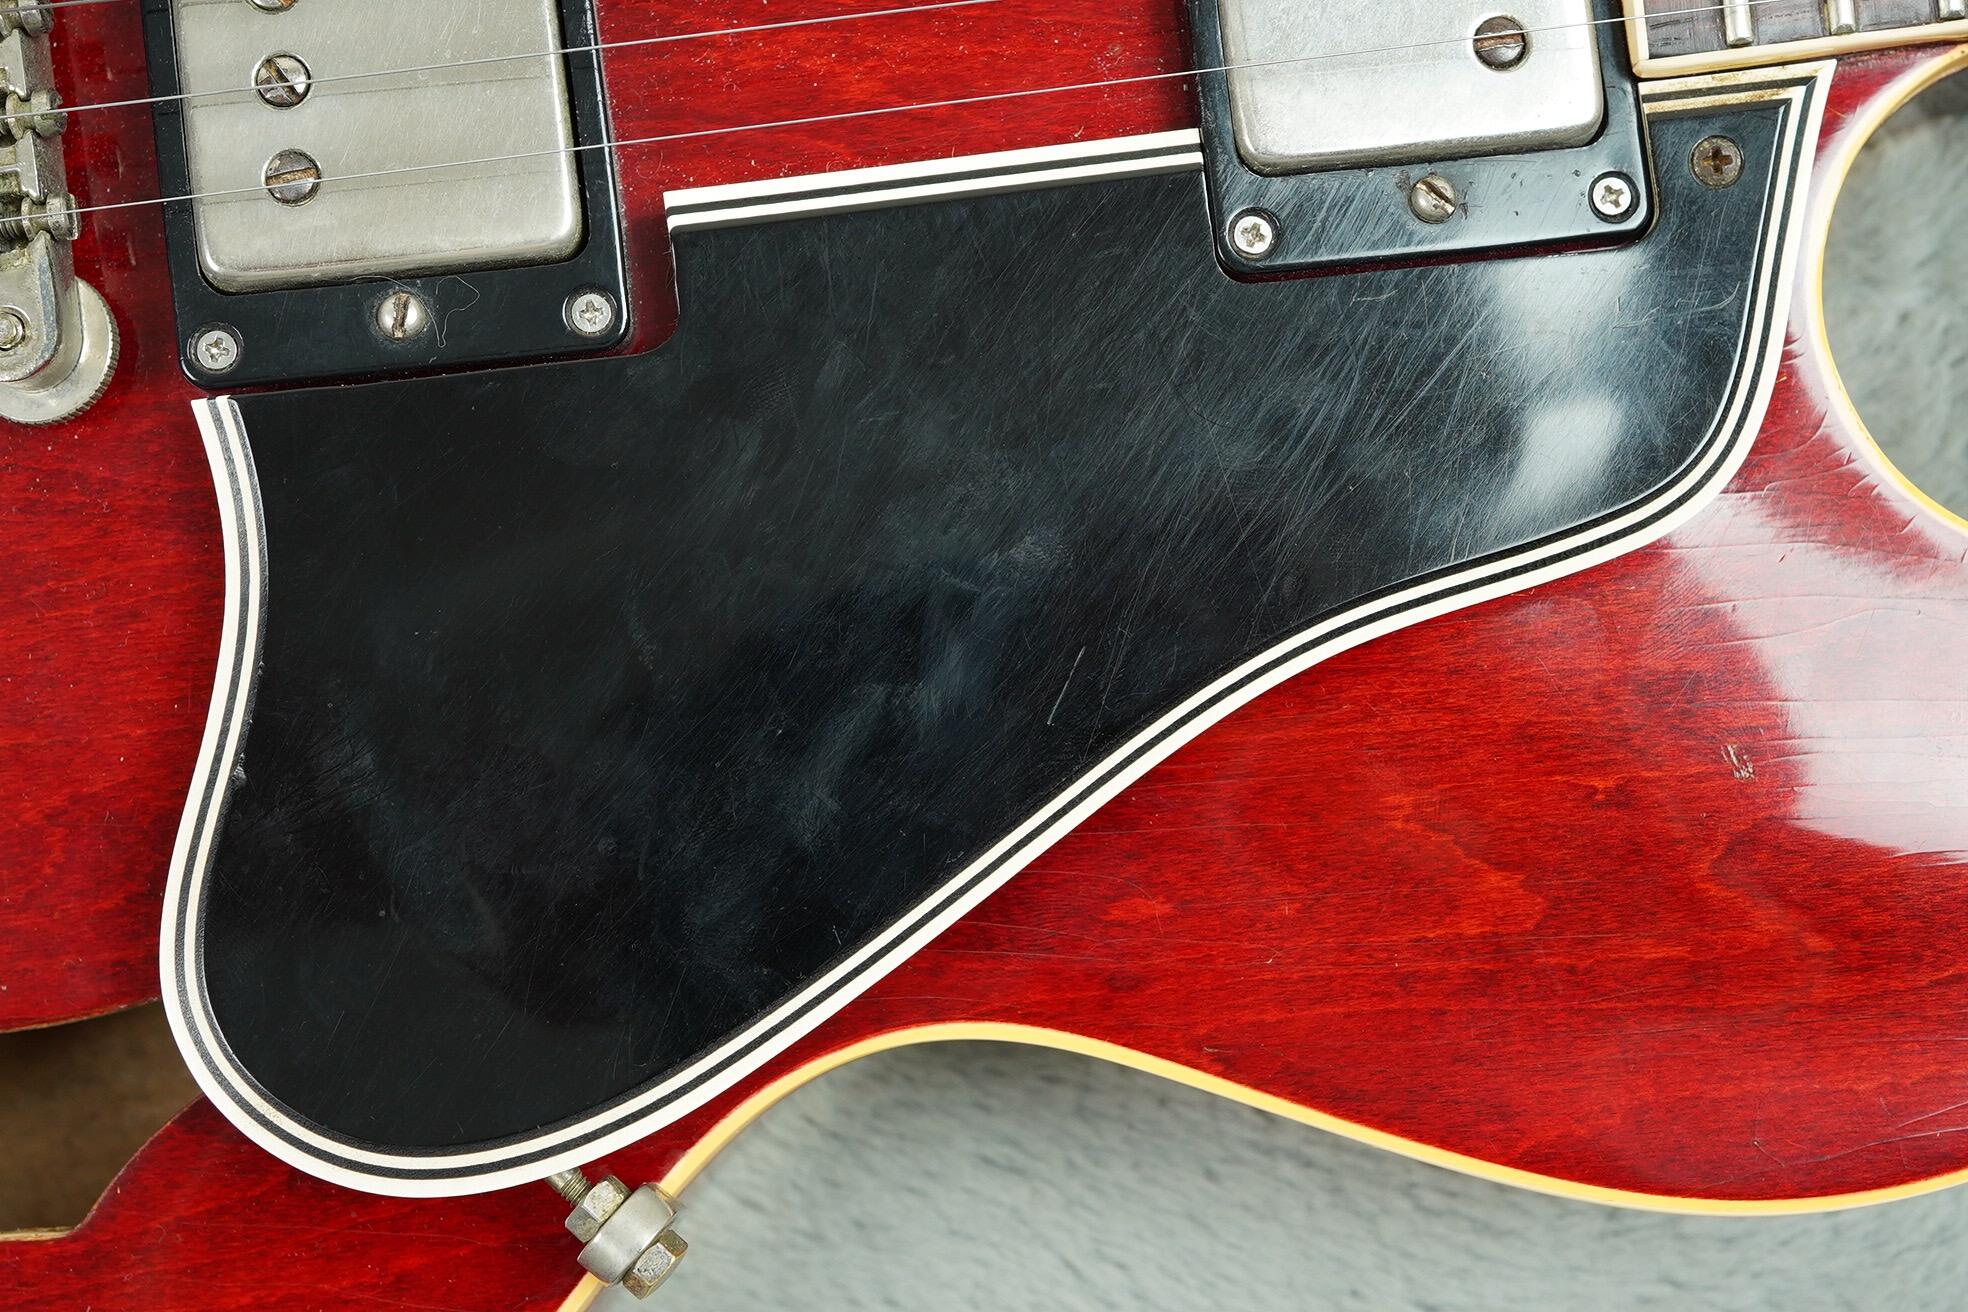 1961 Gibson ES-335 TDC Bigsby